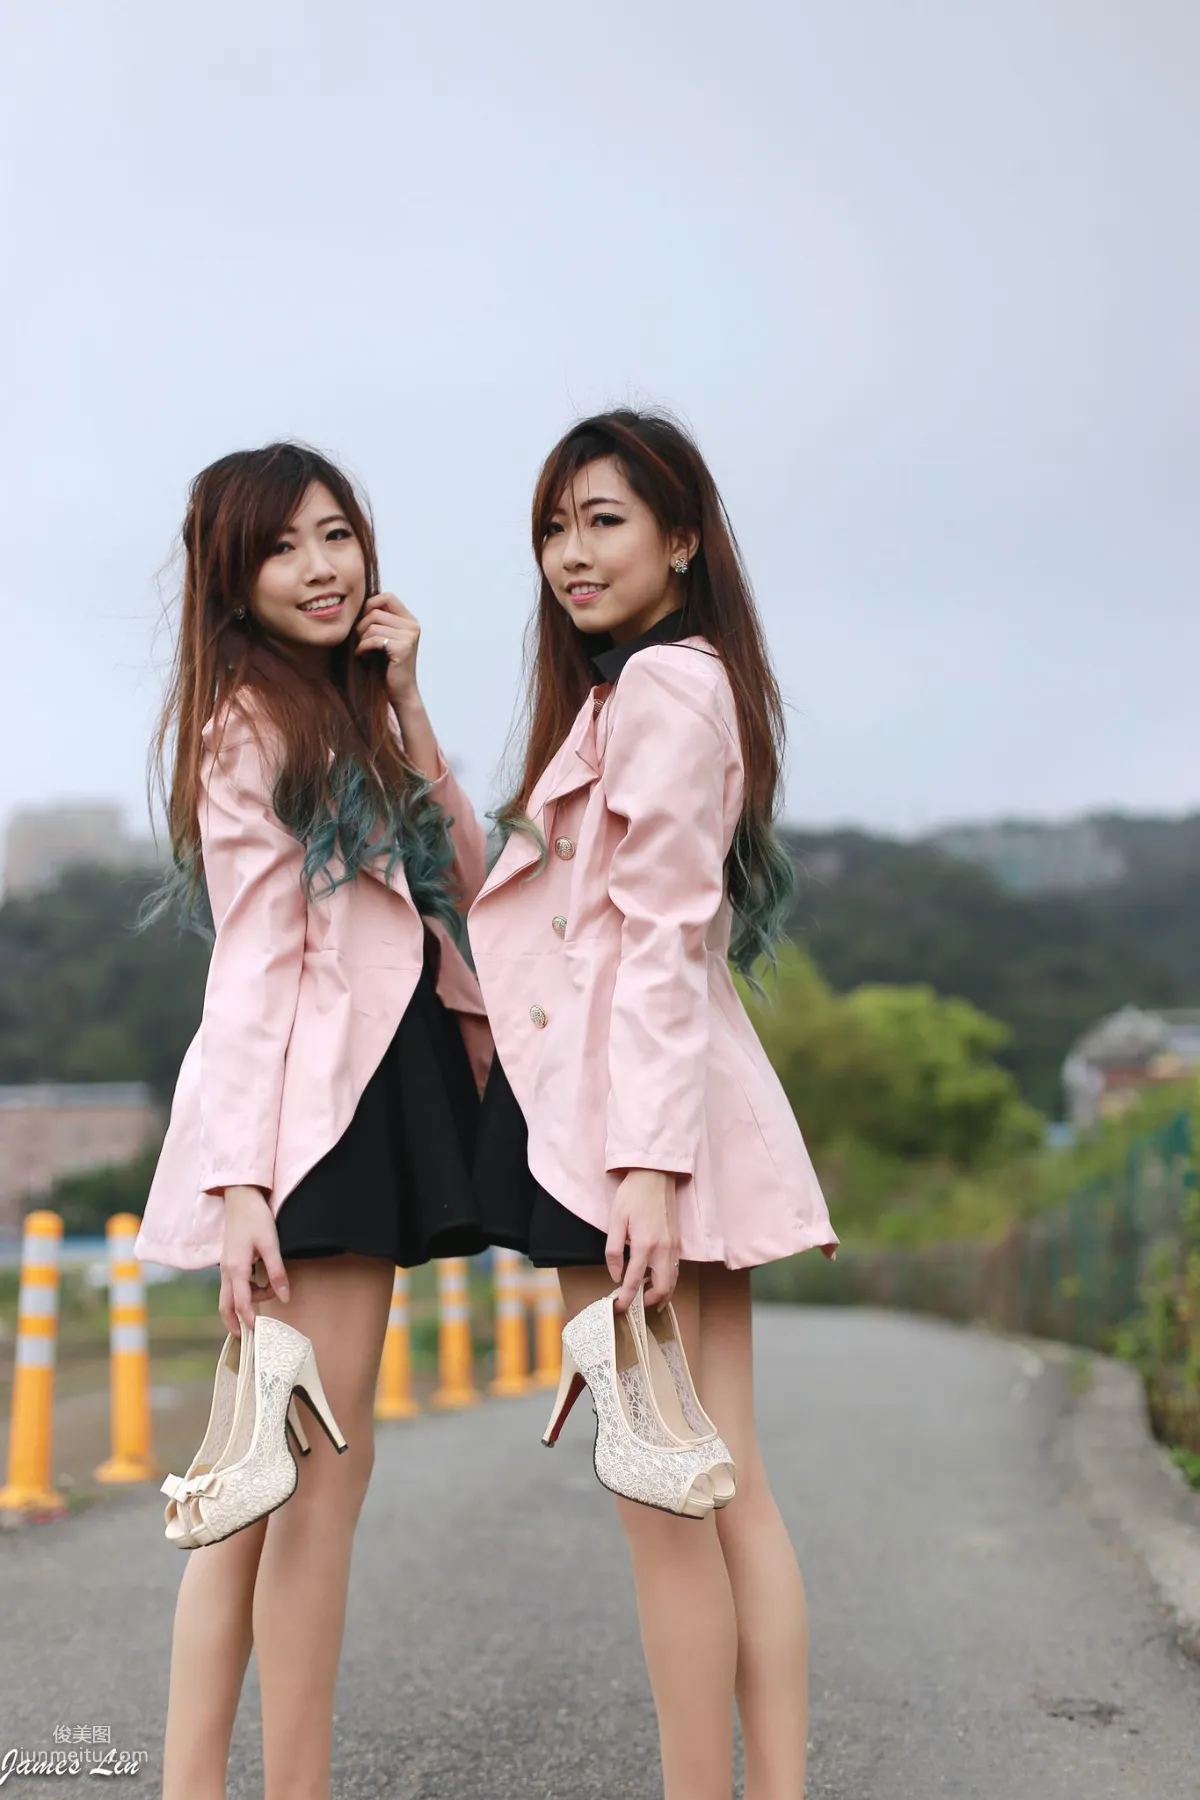 极品清纯甜美台湾双胞胎姐妹花清新外拍写真集42